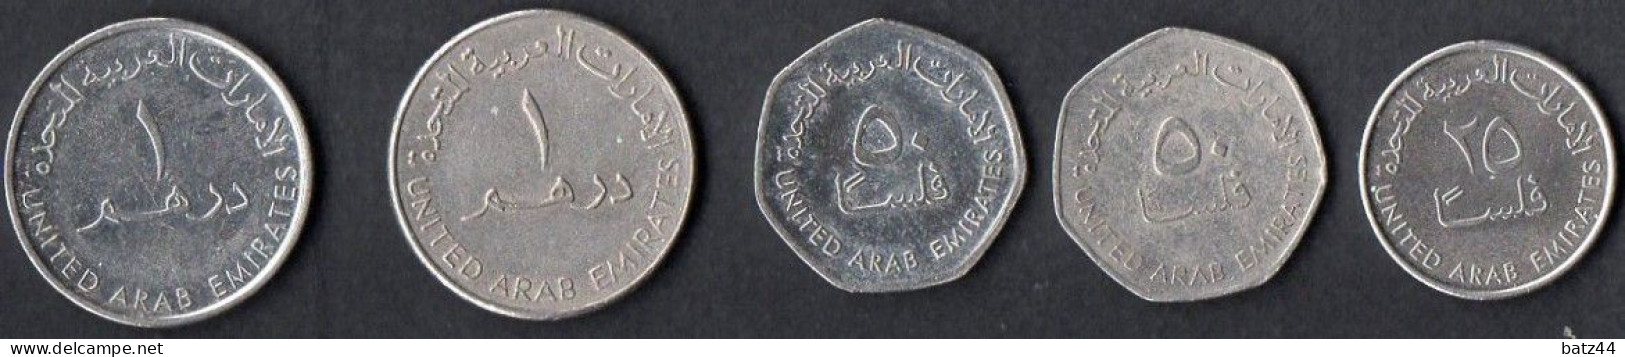 United Arab Emirates Pièces De Monnaie Coins - Emirats Arabes Unis